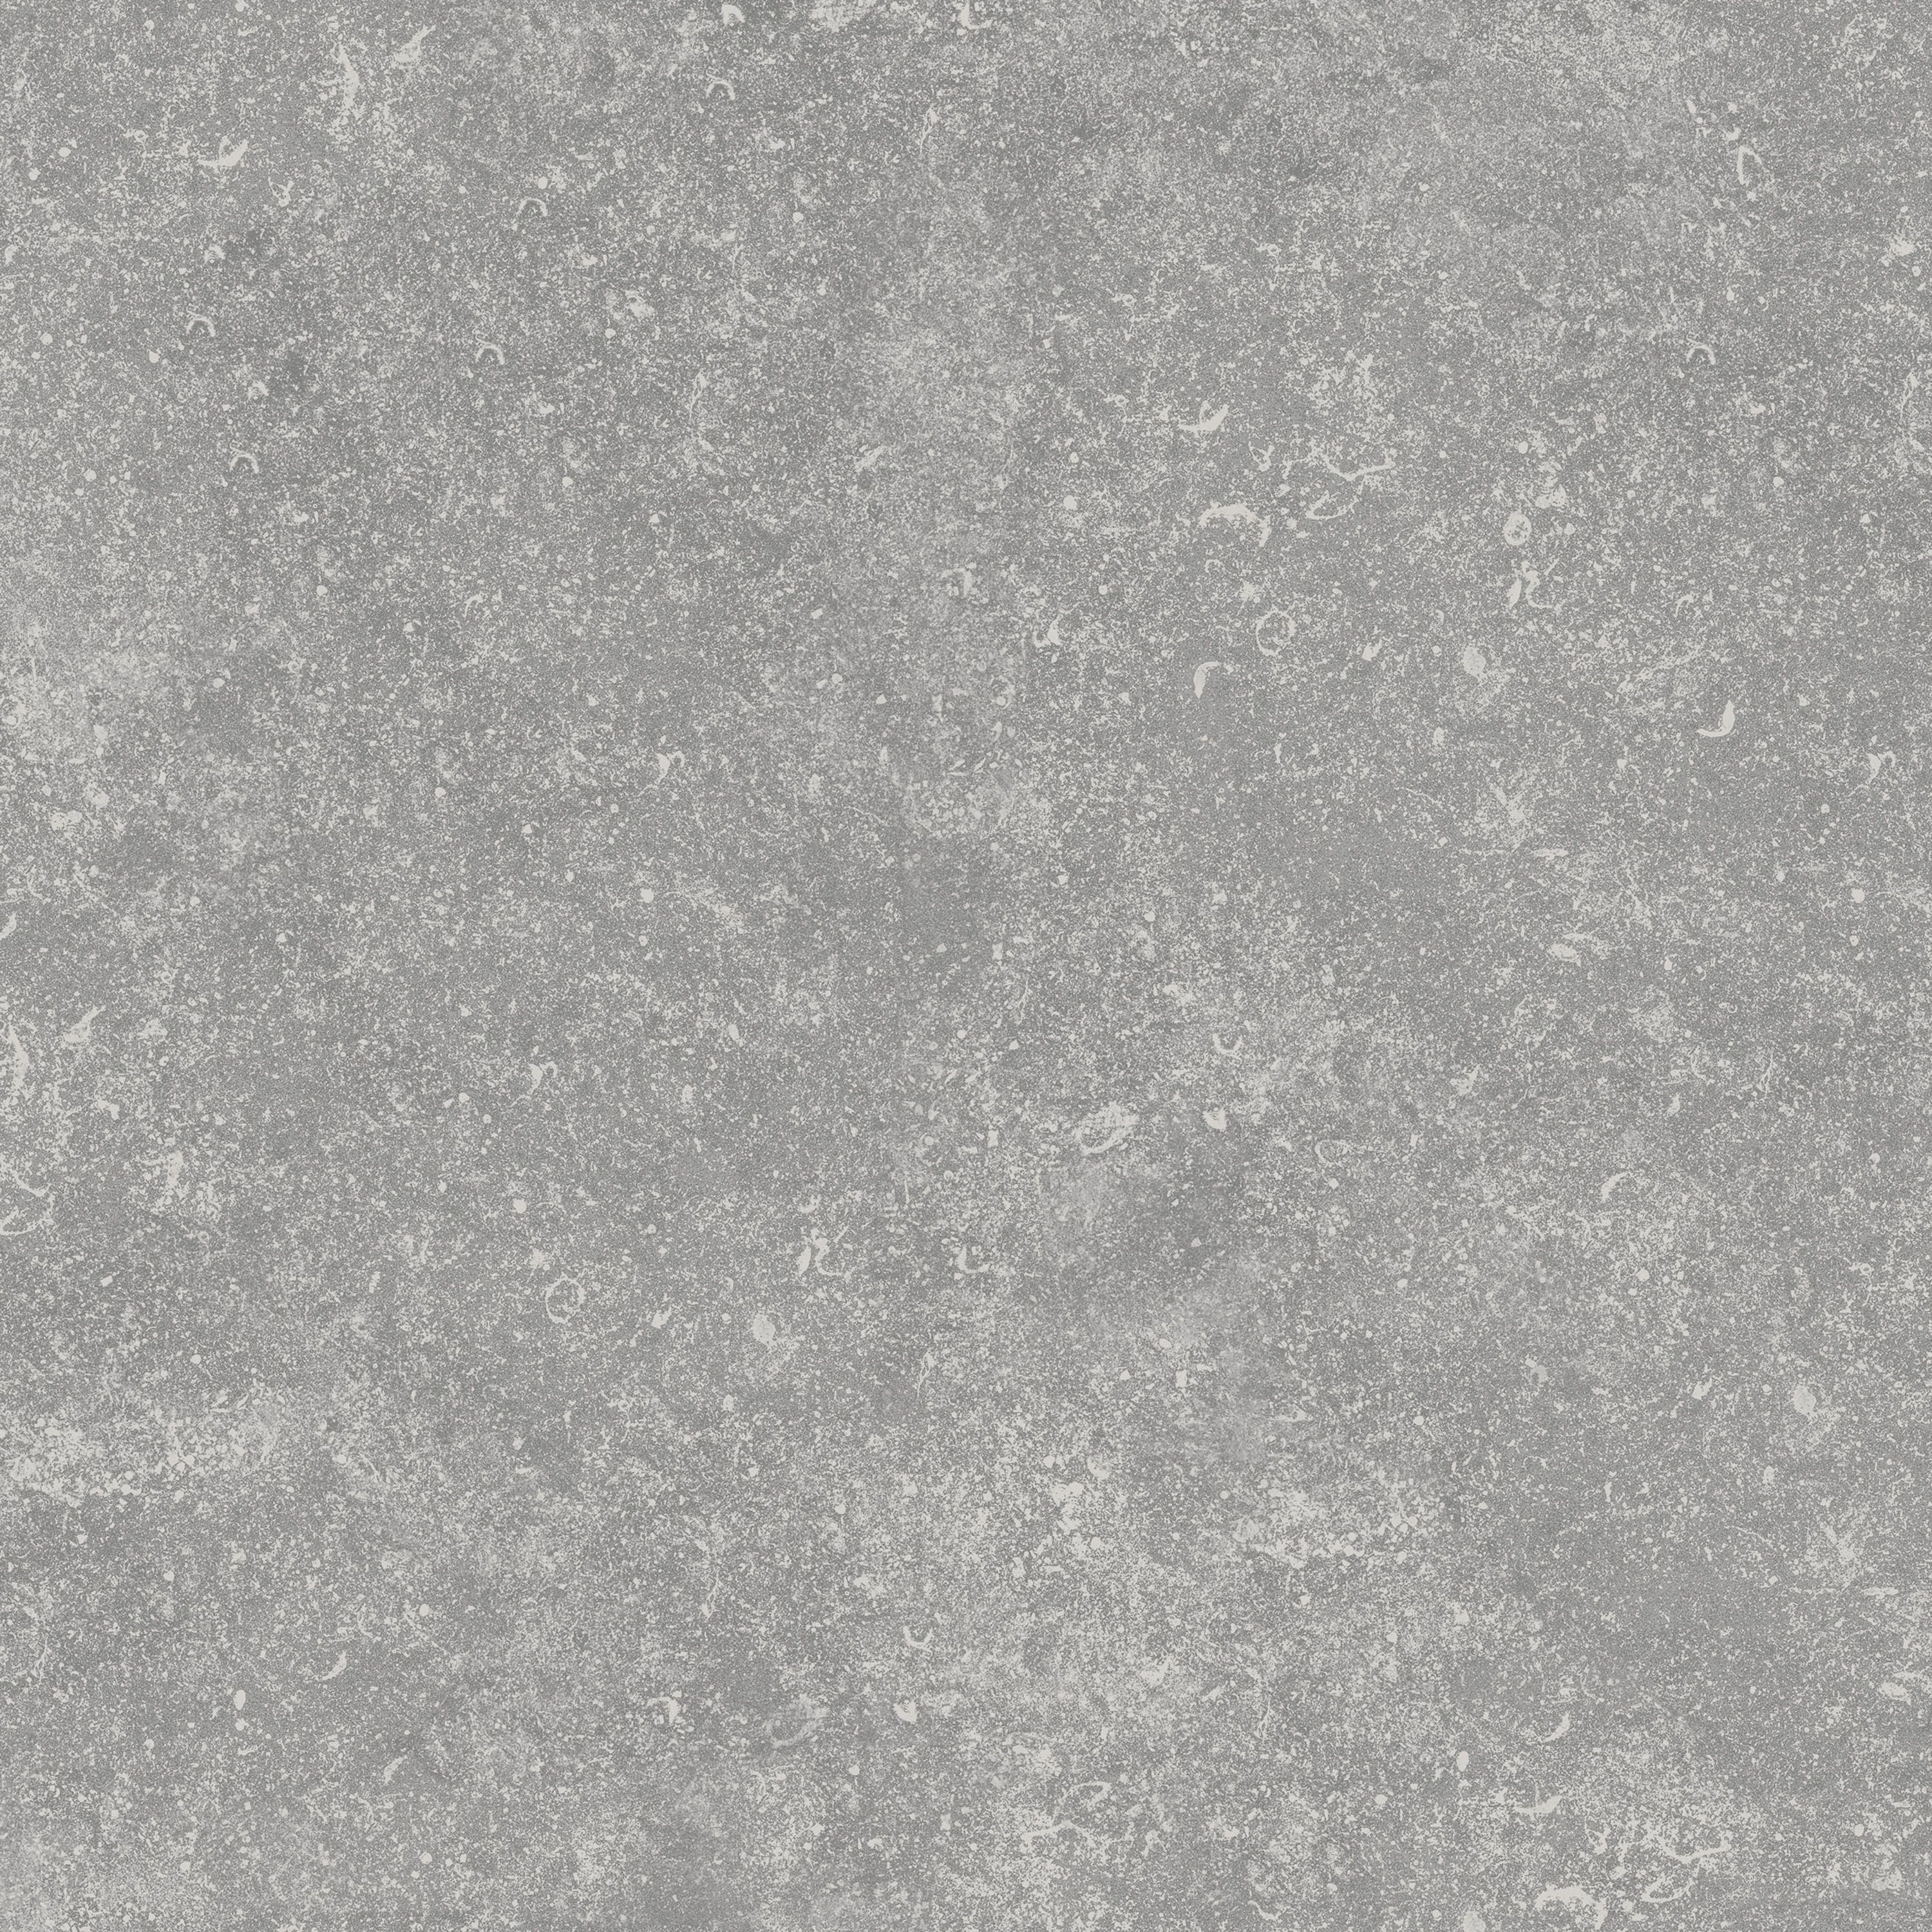 Benelux Grey Matt Stone effect Porcelain Outdoor Floor Tile, Pack of 2, (L)600mm (W)600mm